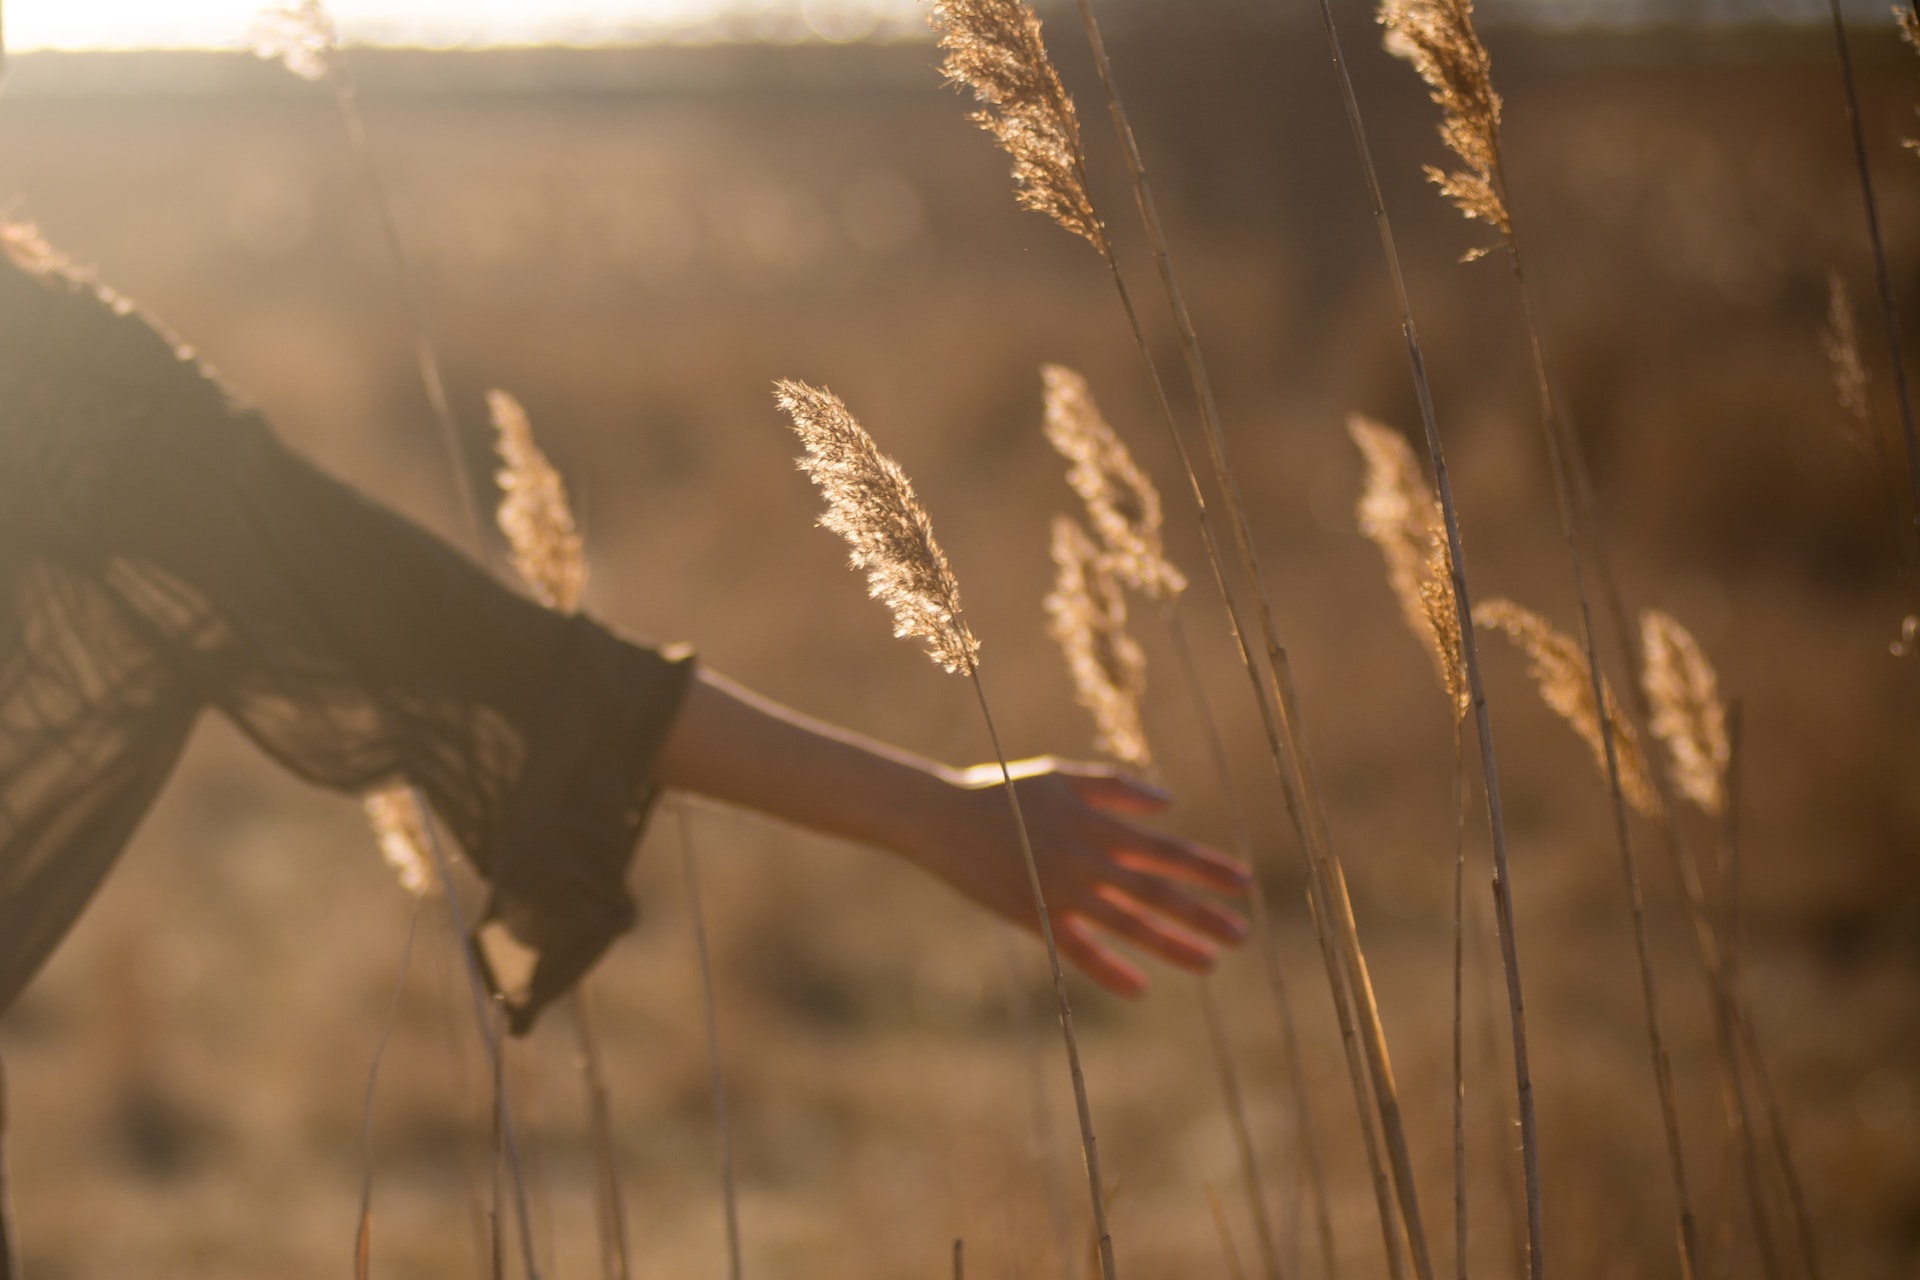 bras habillé d'une tunique de coton et main dénudée devant des épis de blé illuminés par le soleil couchant